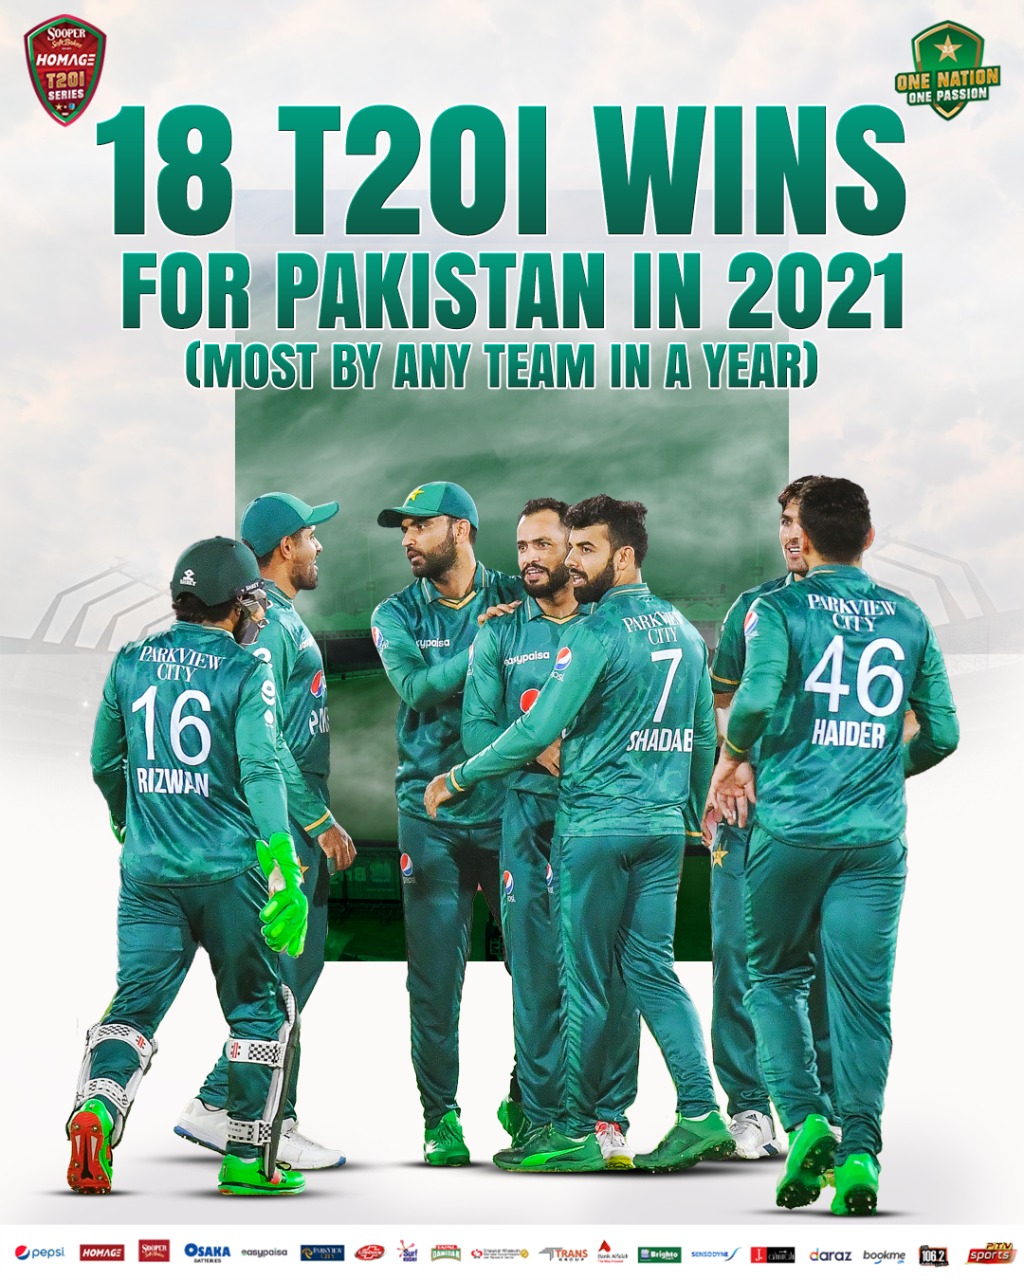 پی سی بی کے مطابق ایک سال کے دوران کسی بھی ٹیم کی جانب سے فتح کی یہ سب سے زیادہ تعداد ہے اور اس سے قبل بھی یہ اعزاز پاکستان کے ہی پاس تھا— پی سی بی